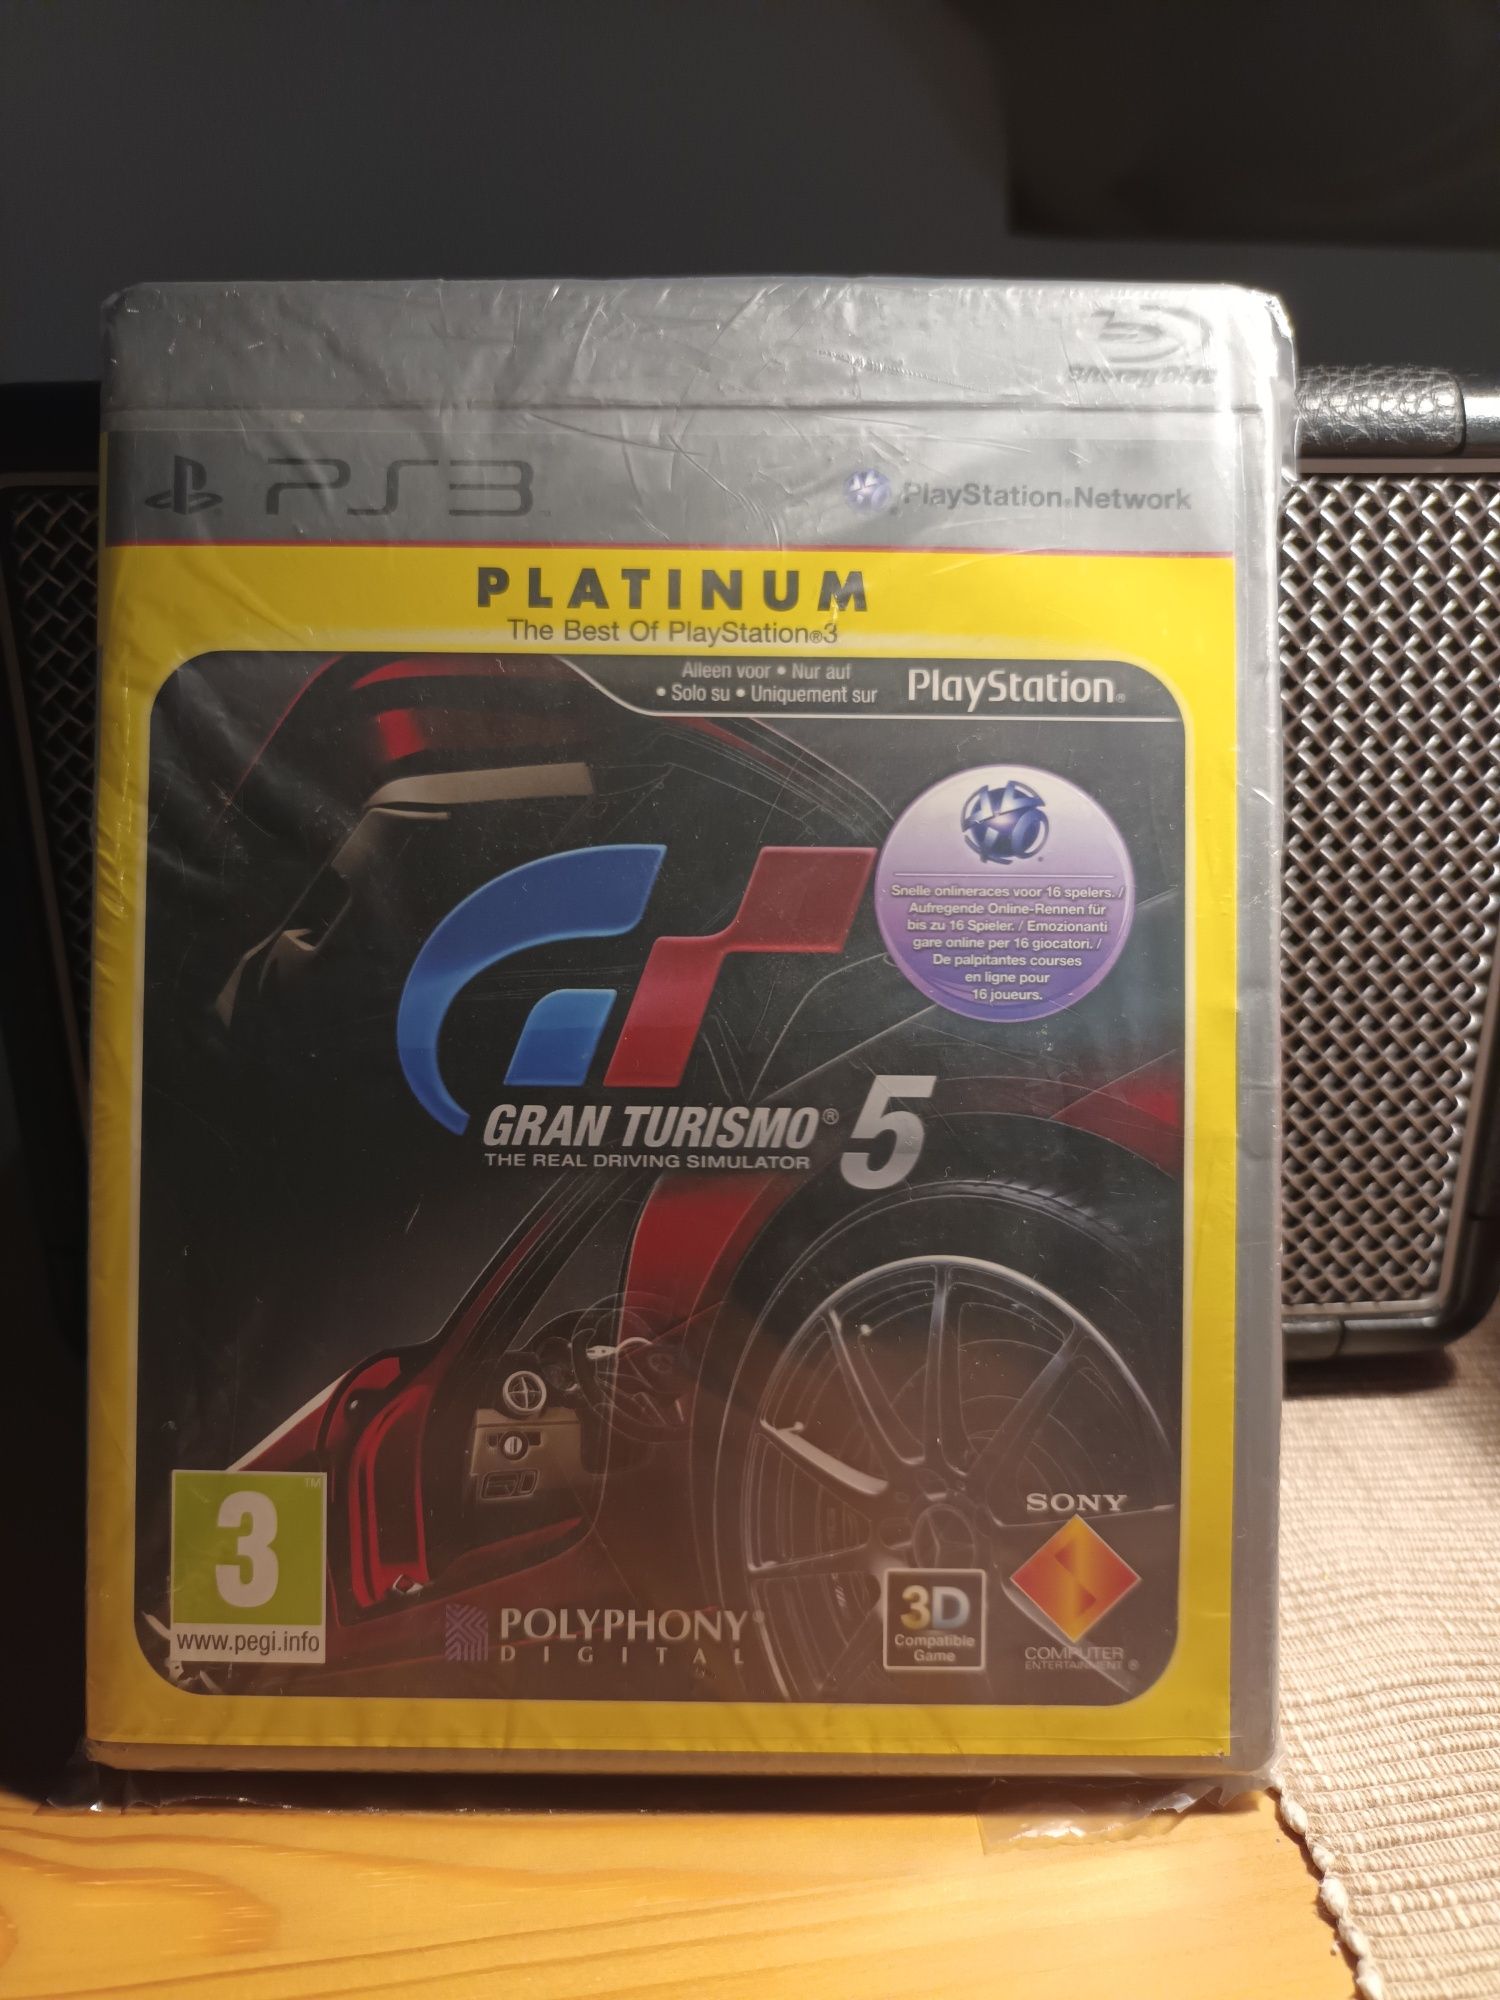 Gran Turismo 5 na PS3